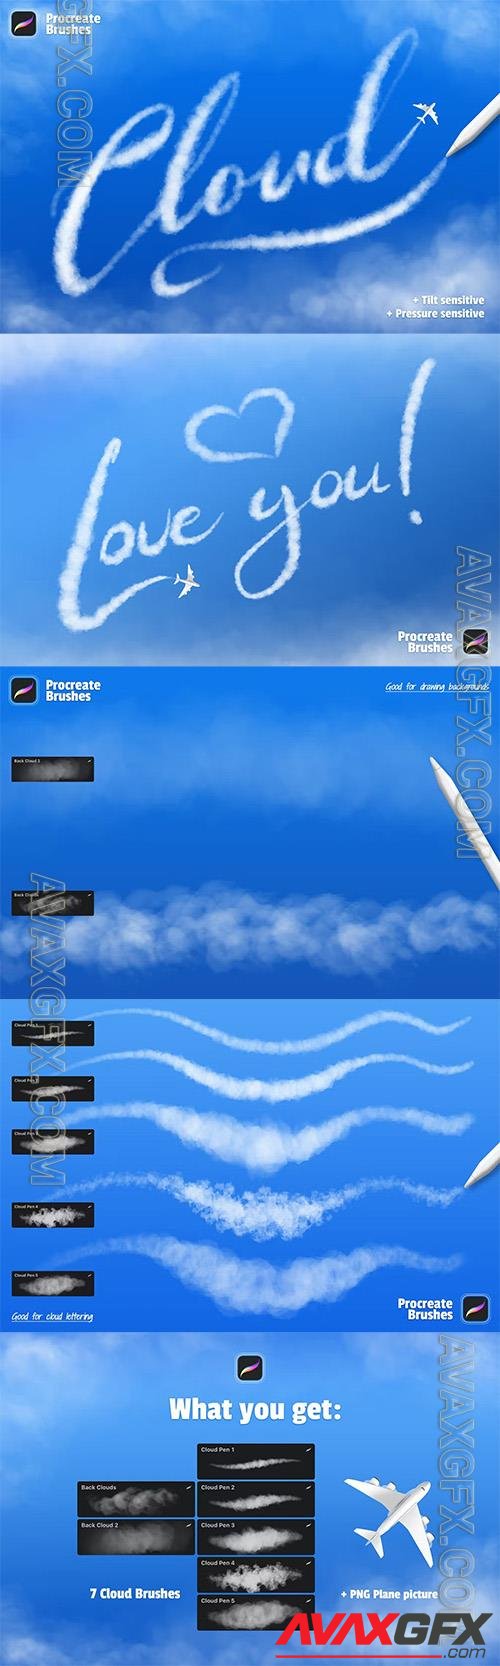 Clouds Procreate Brushes UGL7TB7